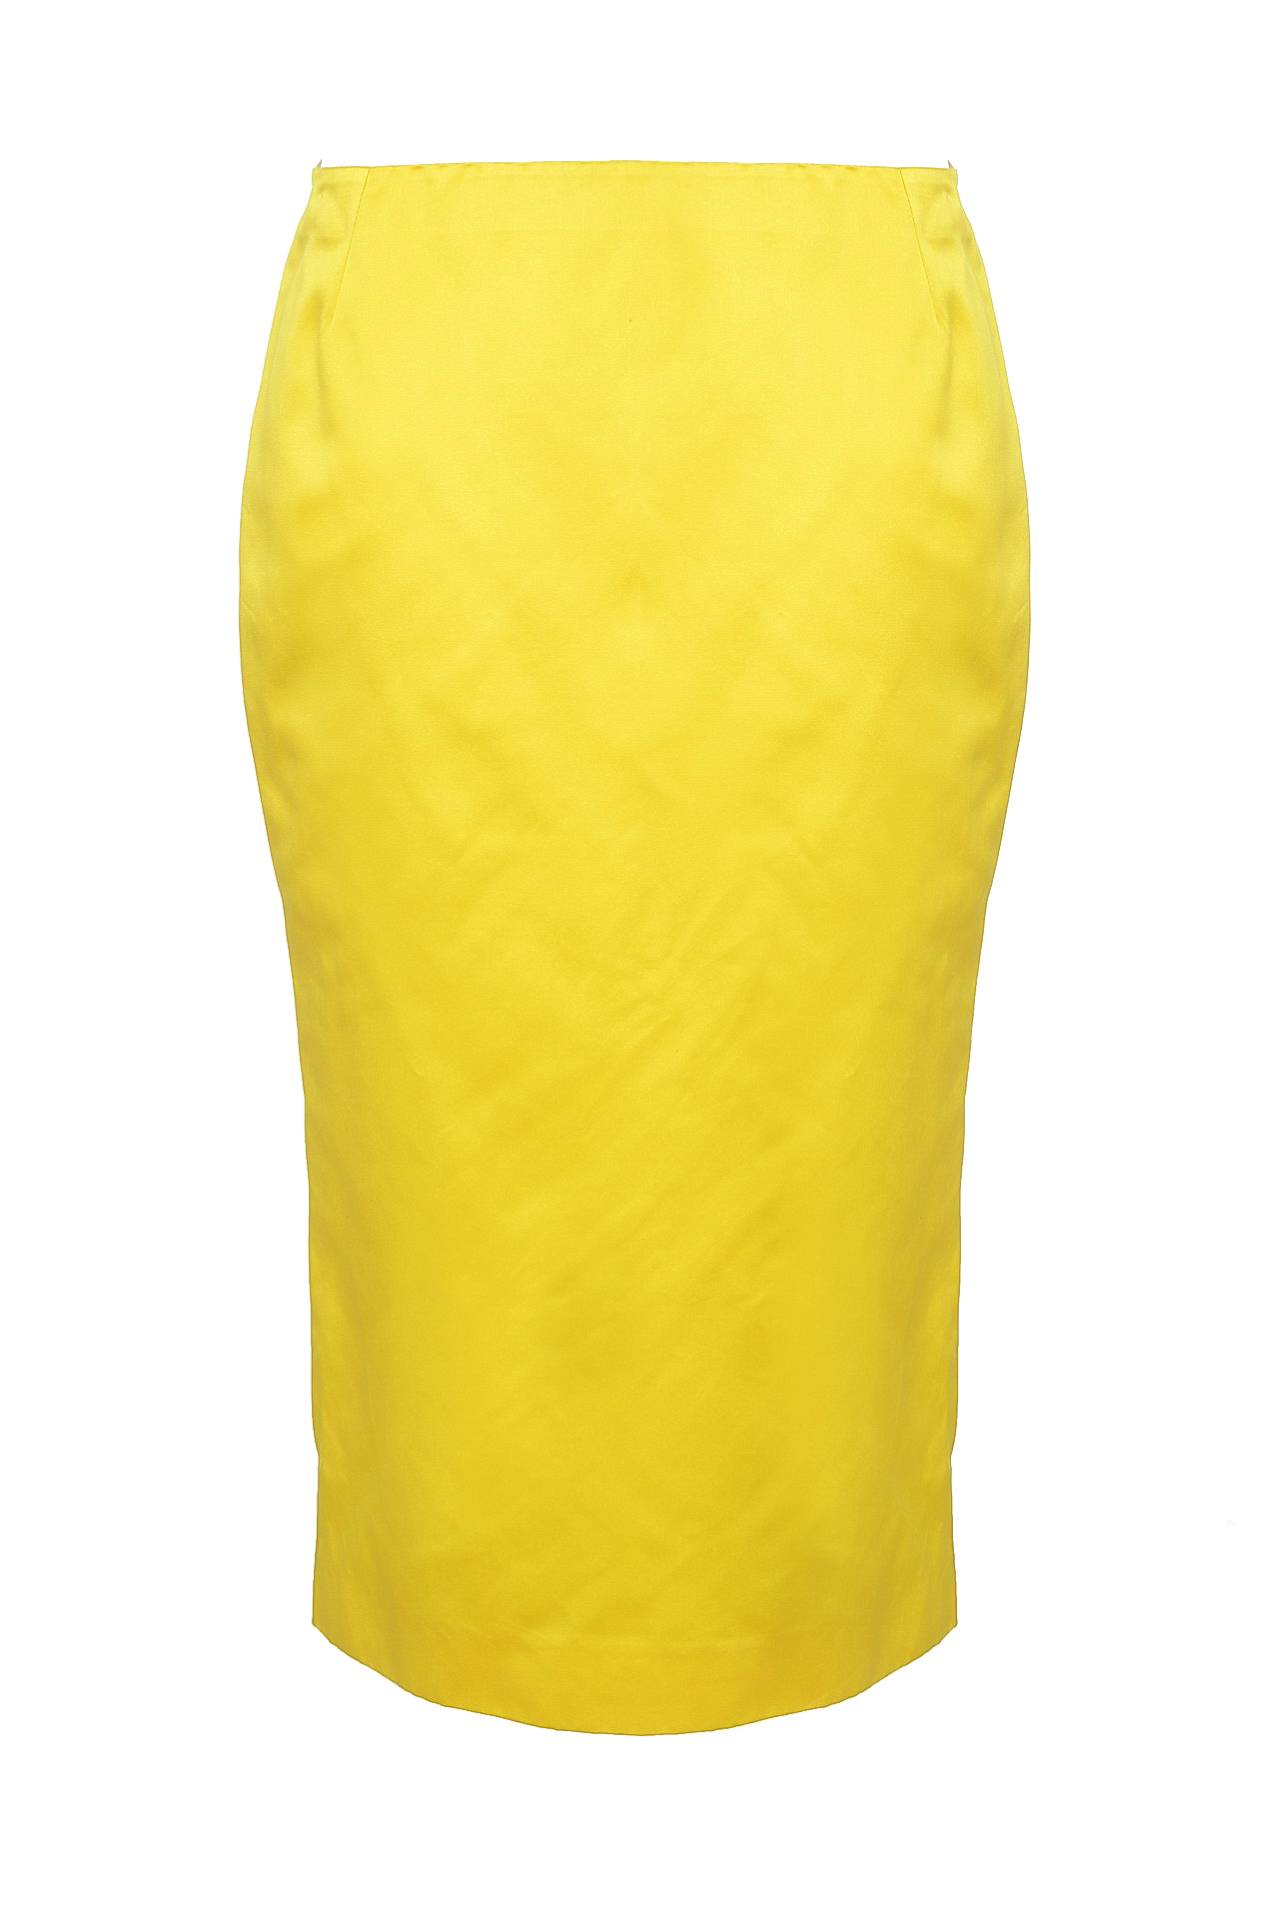 Одежда женская Юбка DOLCE & GABBANA (R8701522/0012). Купить за 10465 руб.